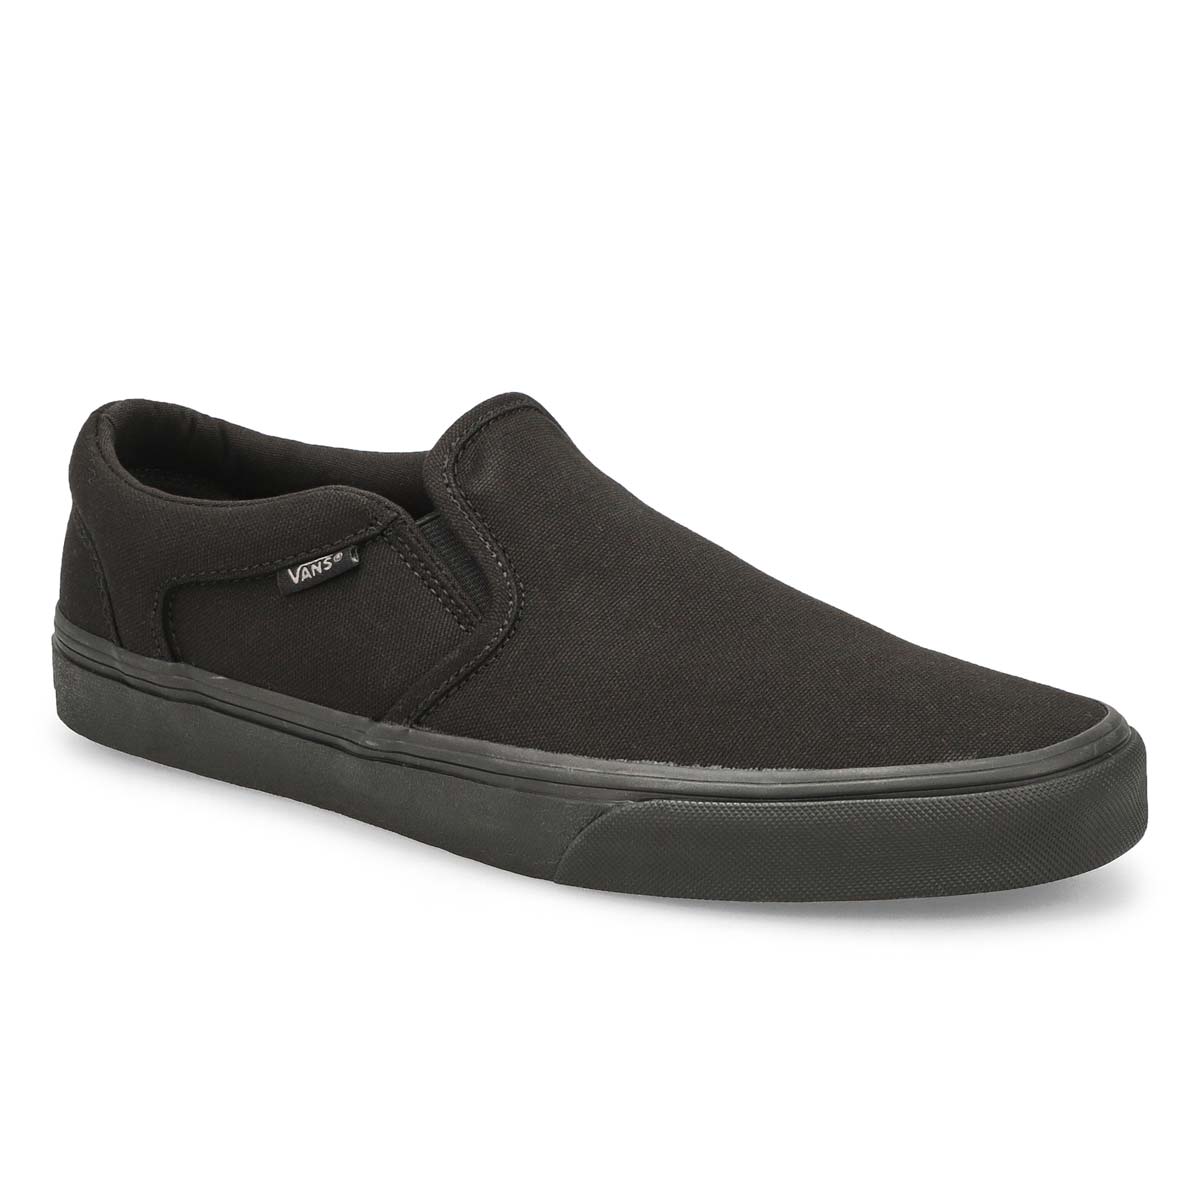 Vans Men's ASHER black slip on sneakers 